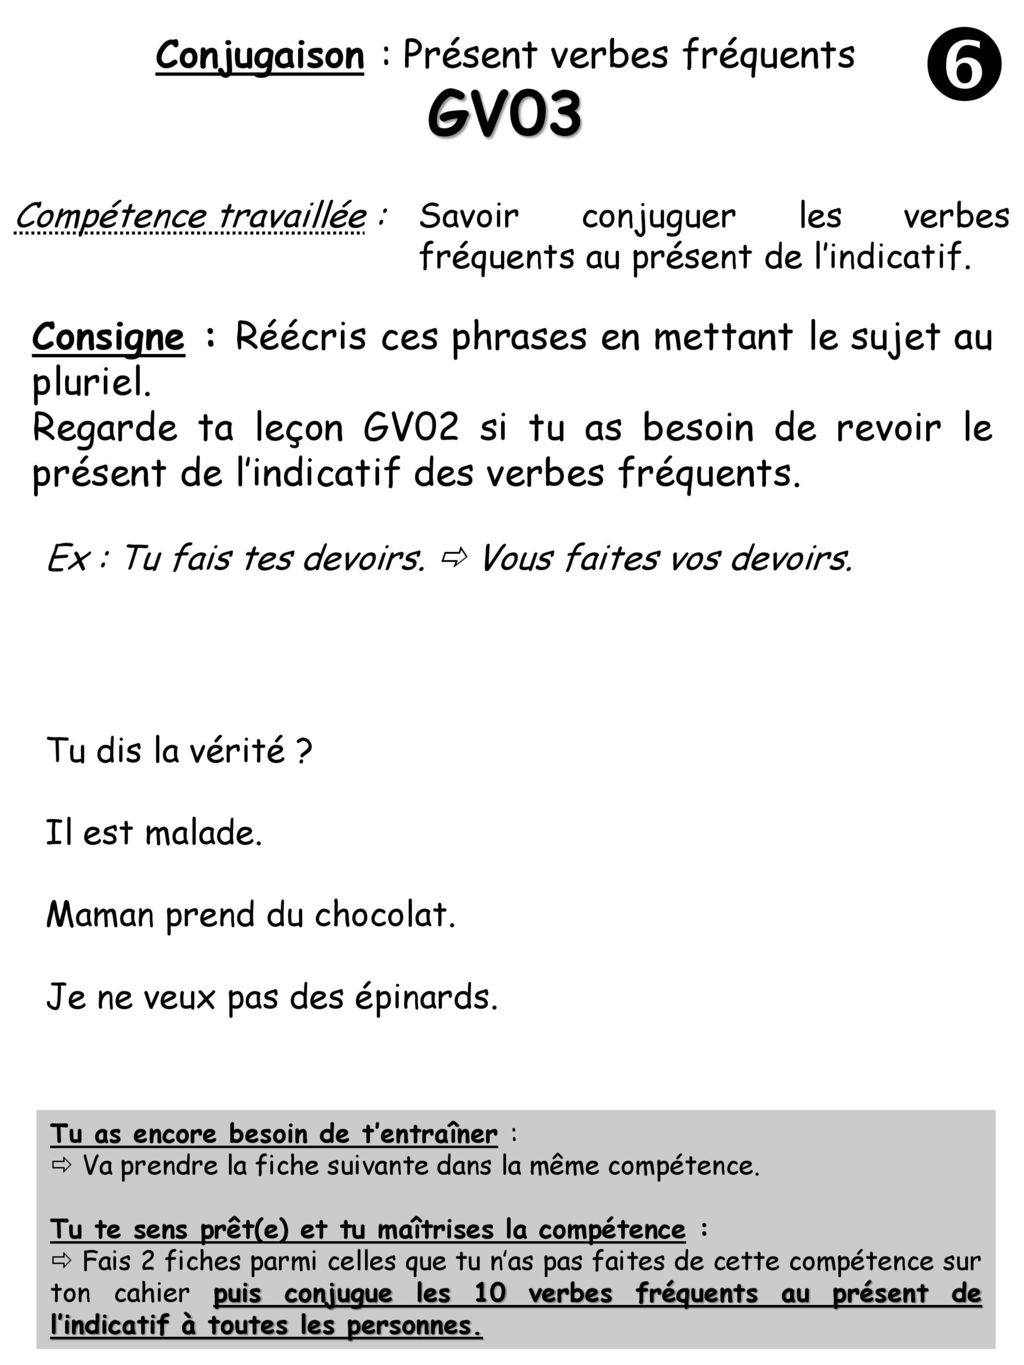 Verbe Revoir Au Présent De L Indicatif Conjugaison : Présent verbes fréquents - ppt télécharger